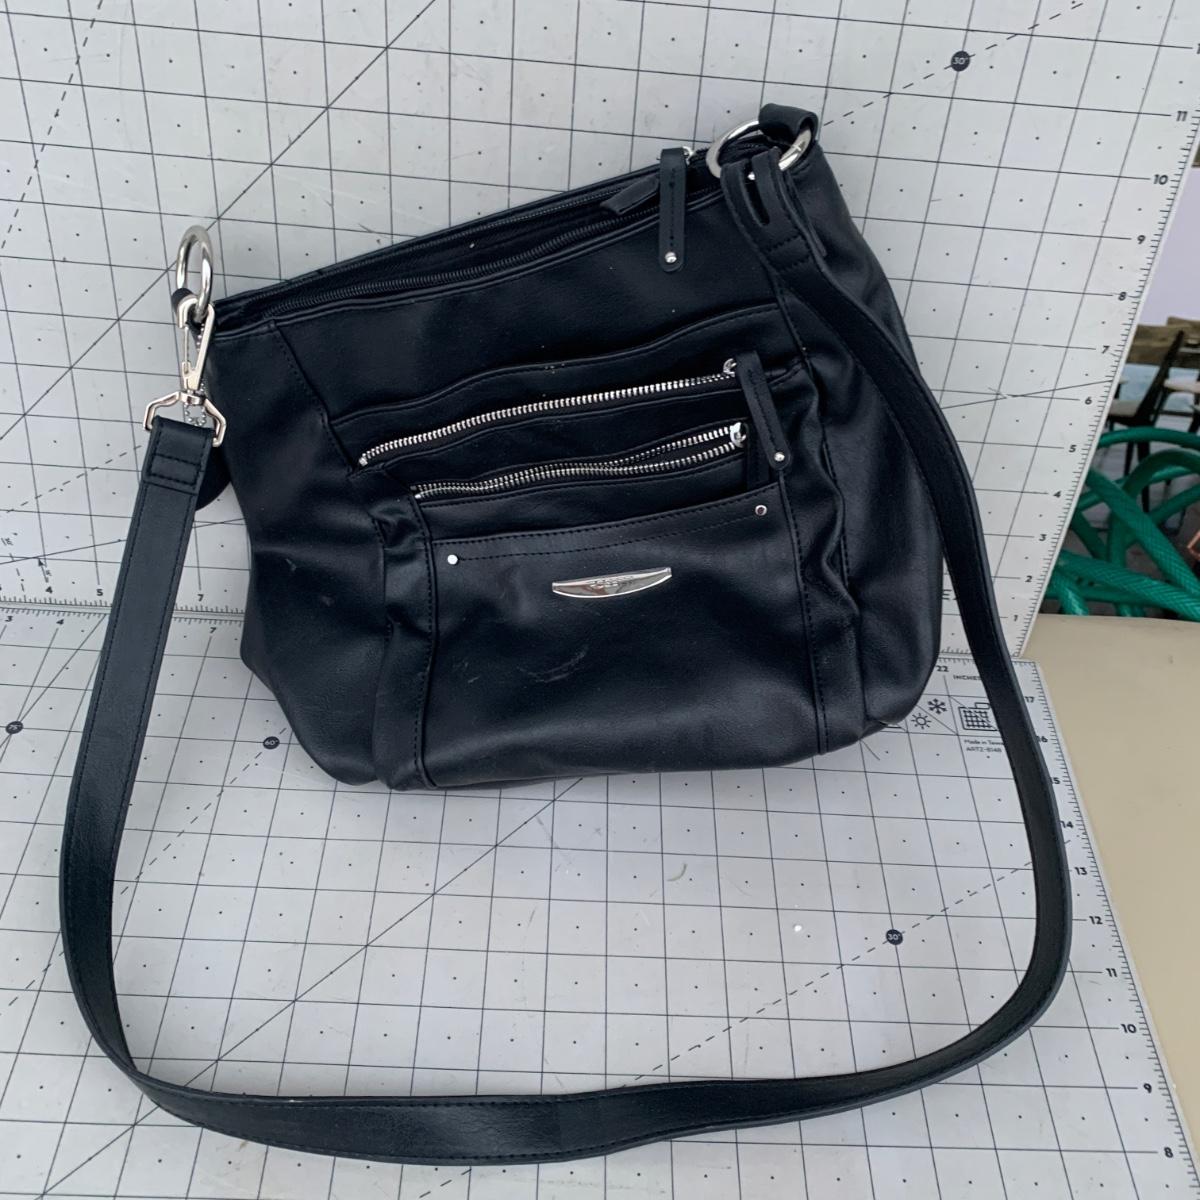 Rosetti White Bags & Handbags for Women for sale | eBay